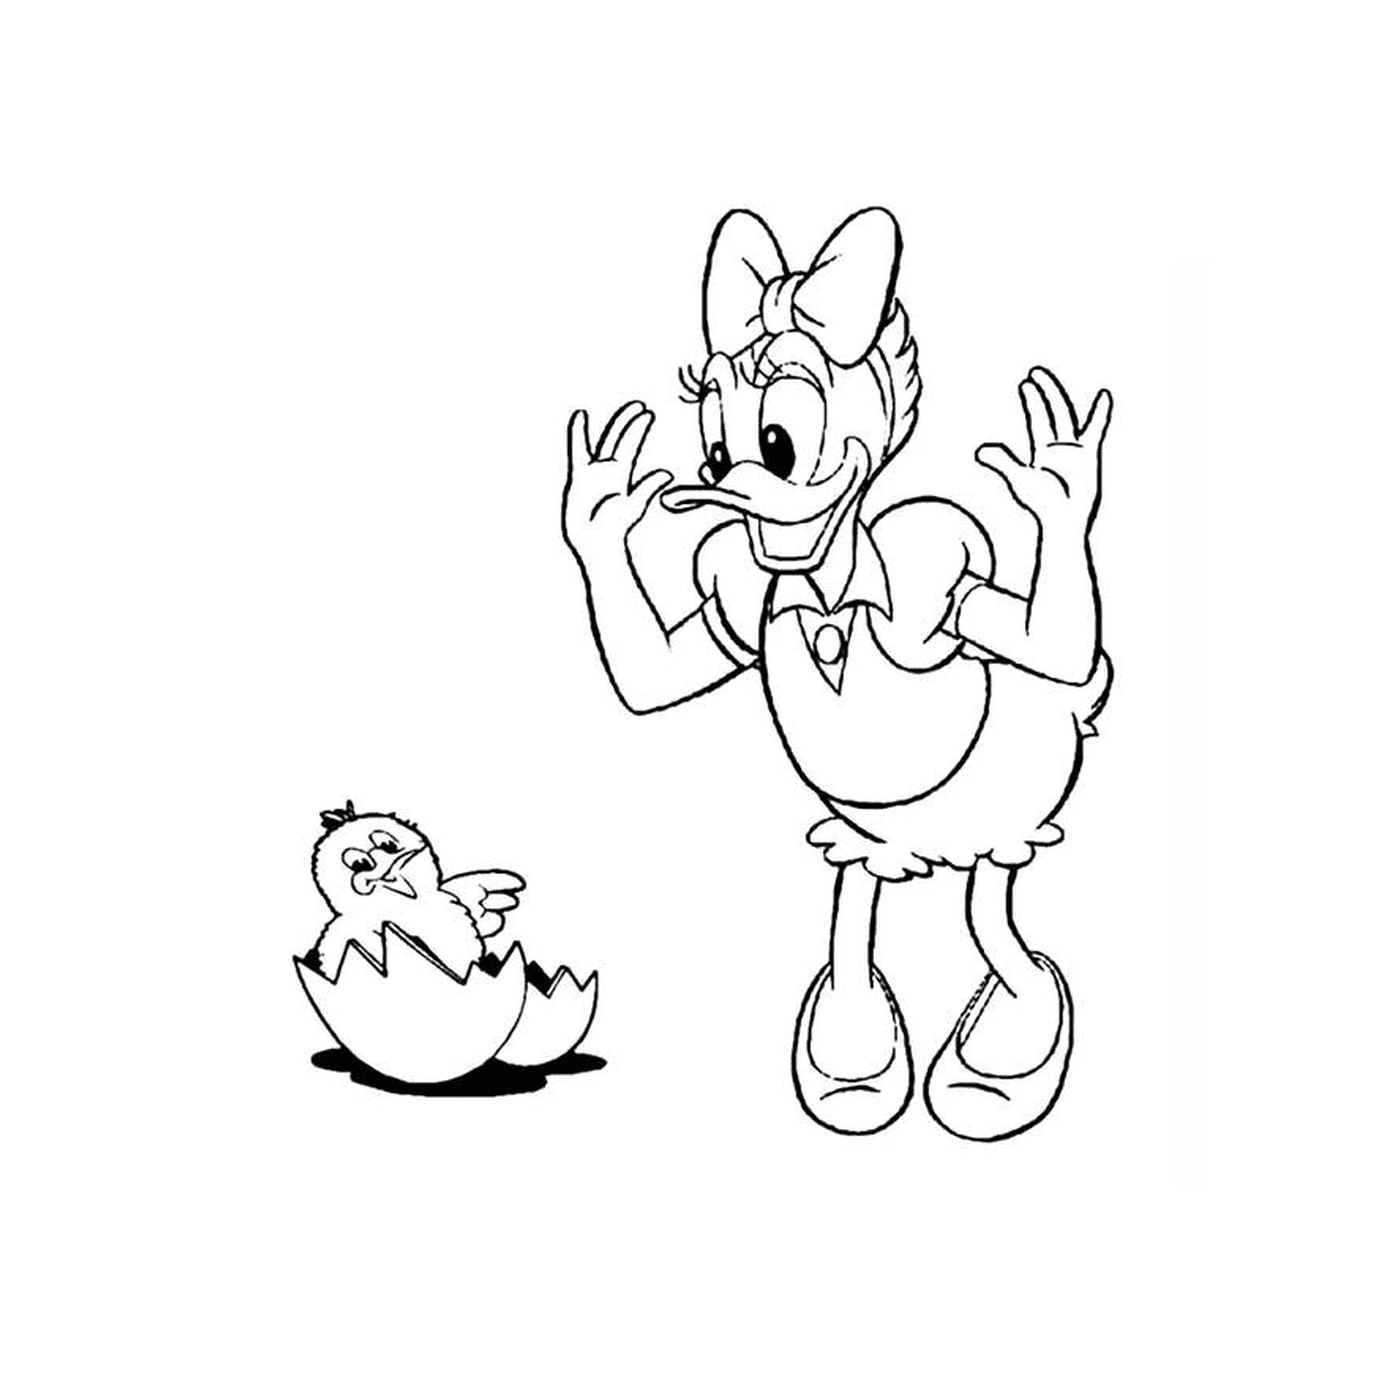  一个卡通人物和一个鸡蛋 